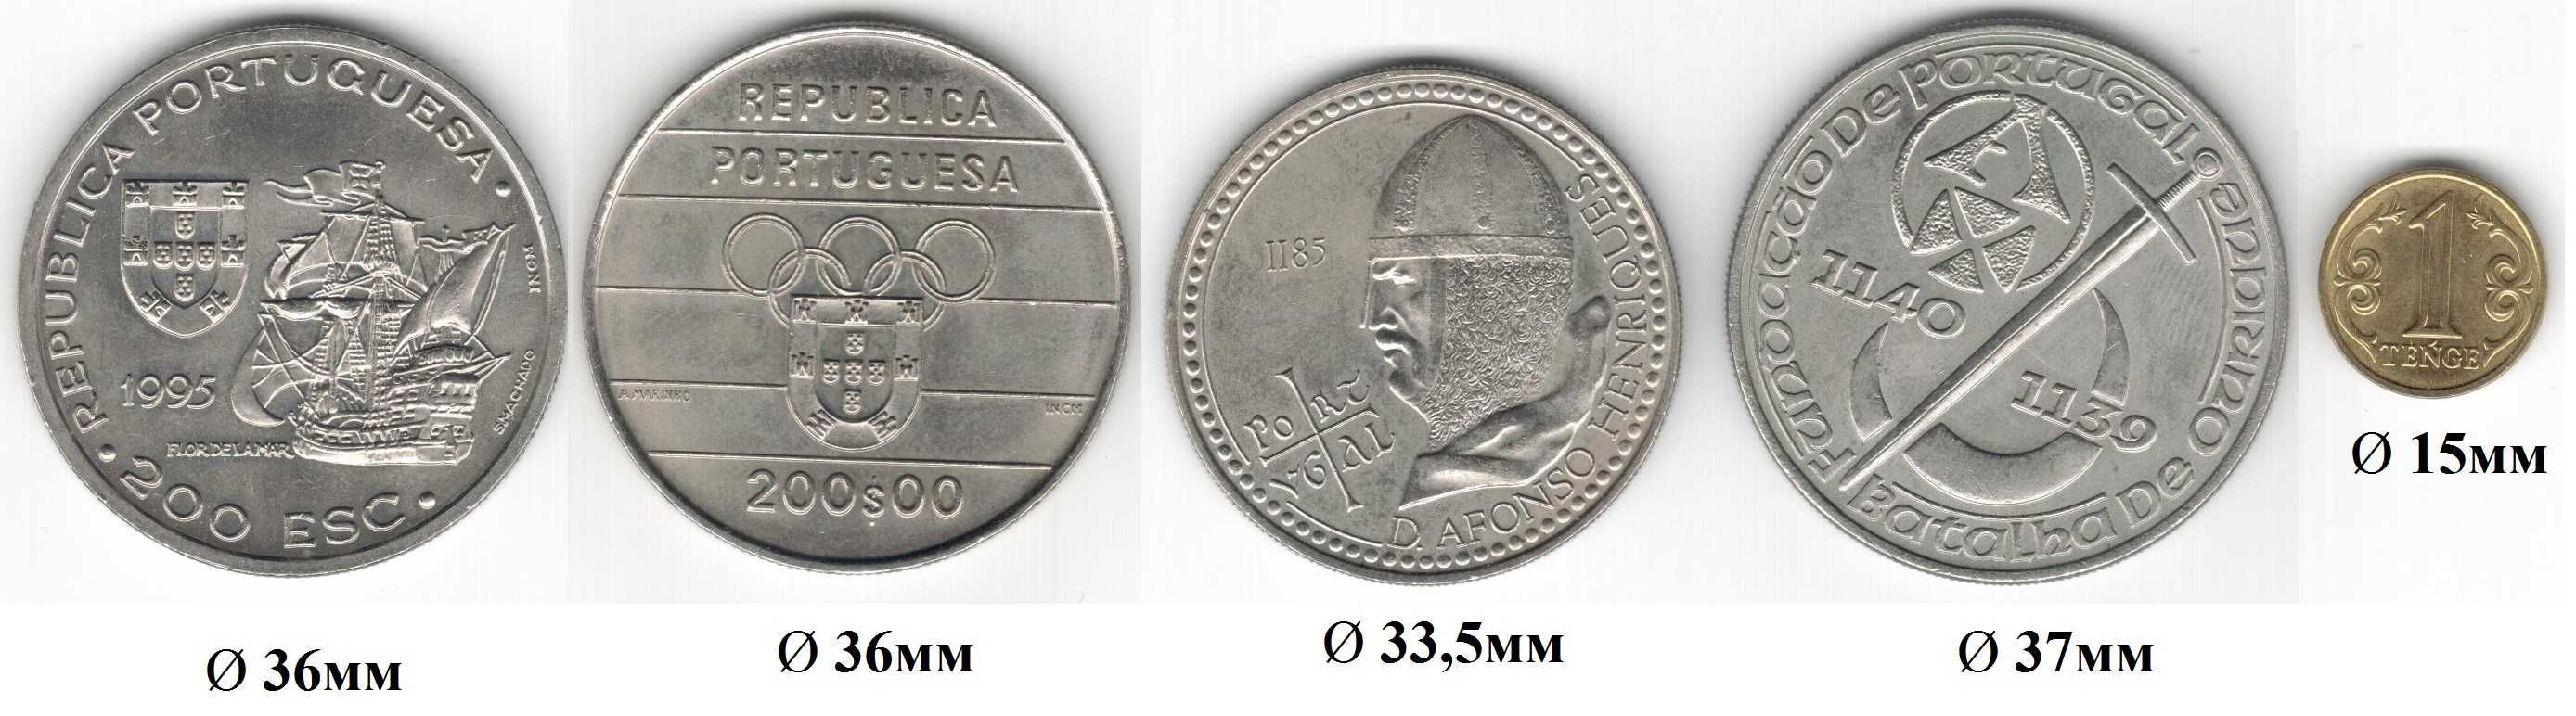 Большие монеты Португалии